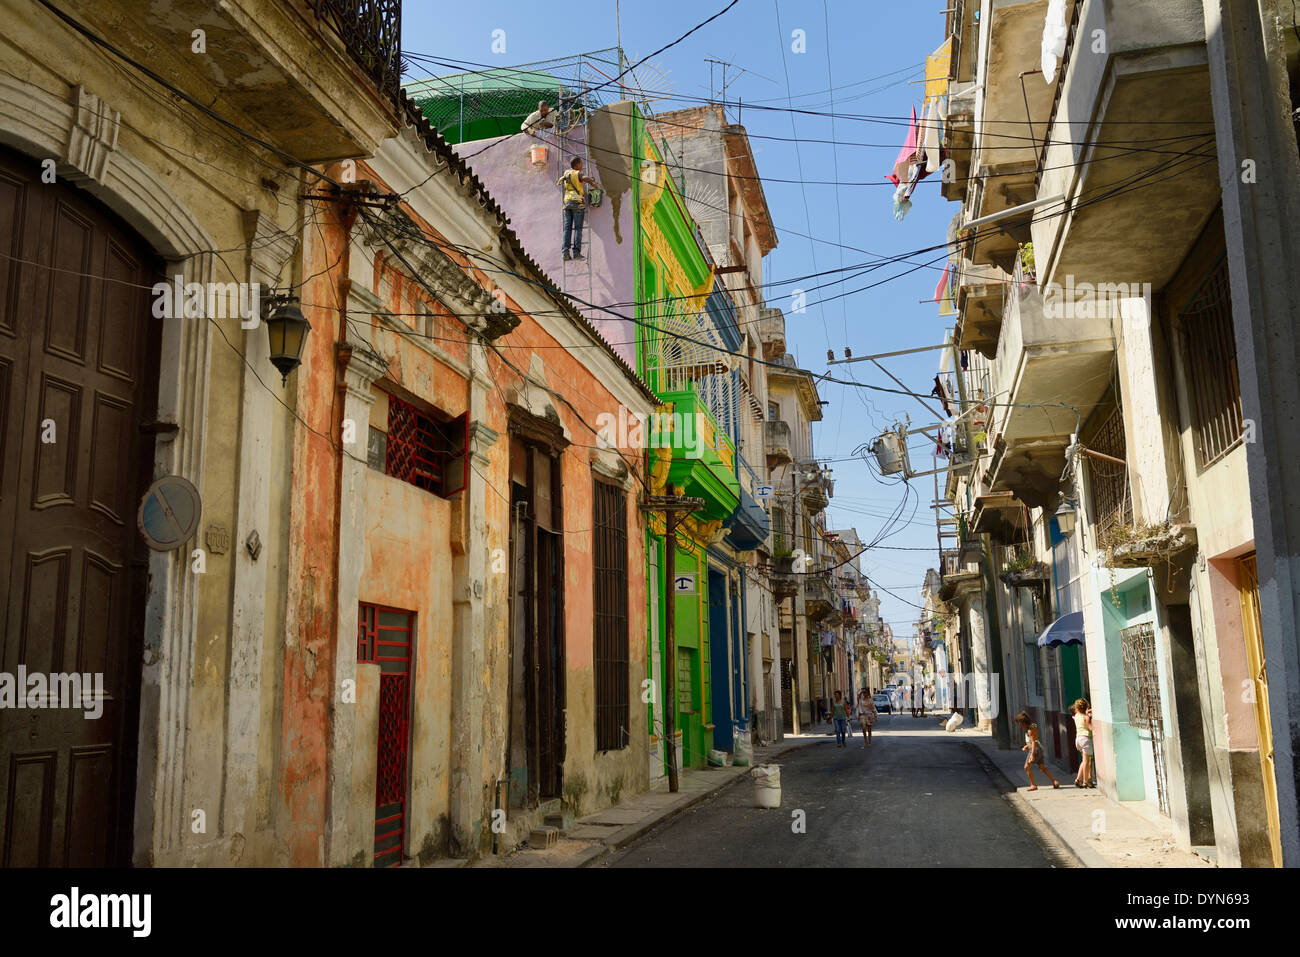 Straße in der Altstadt von Havanna Kuba mit Arbeitern Instandsetzung Wand spielende Kinder und Frauen zu Fuß Stockfoto